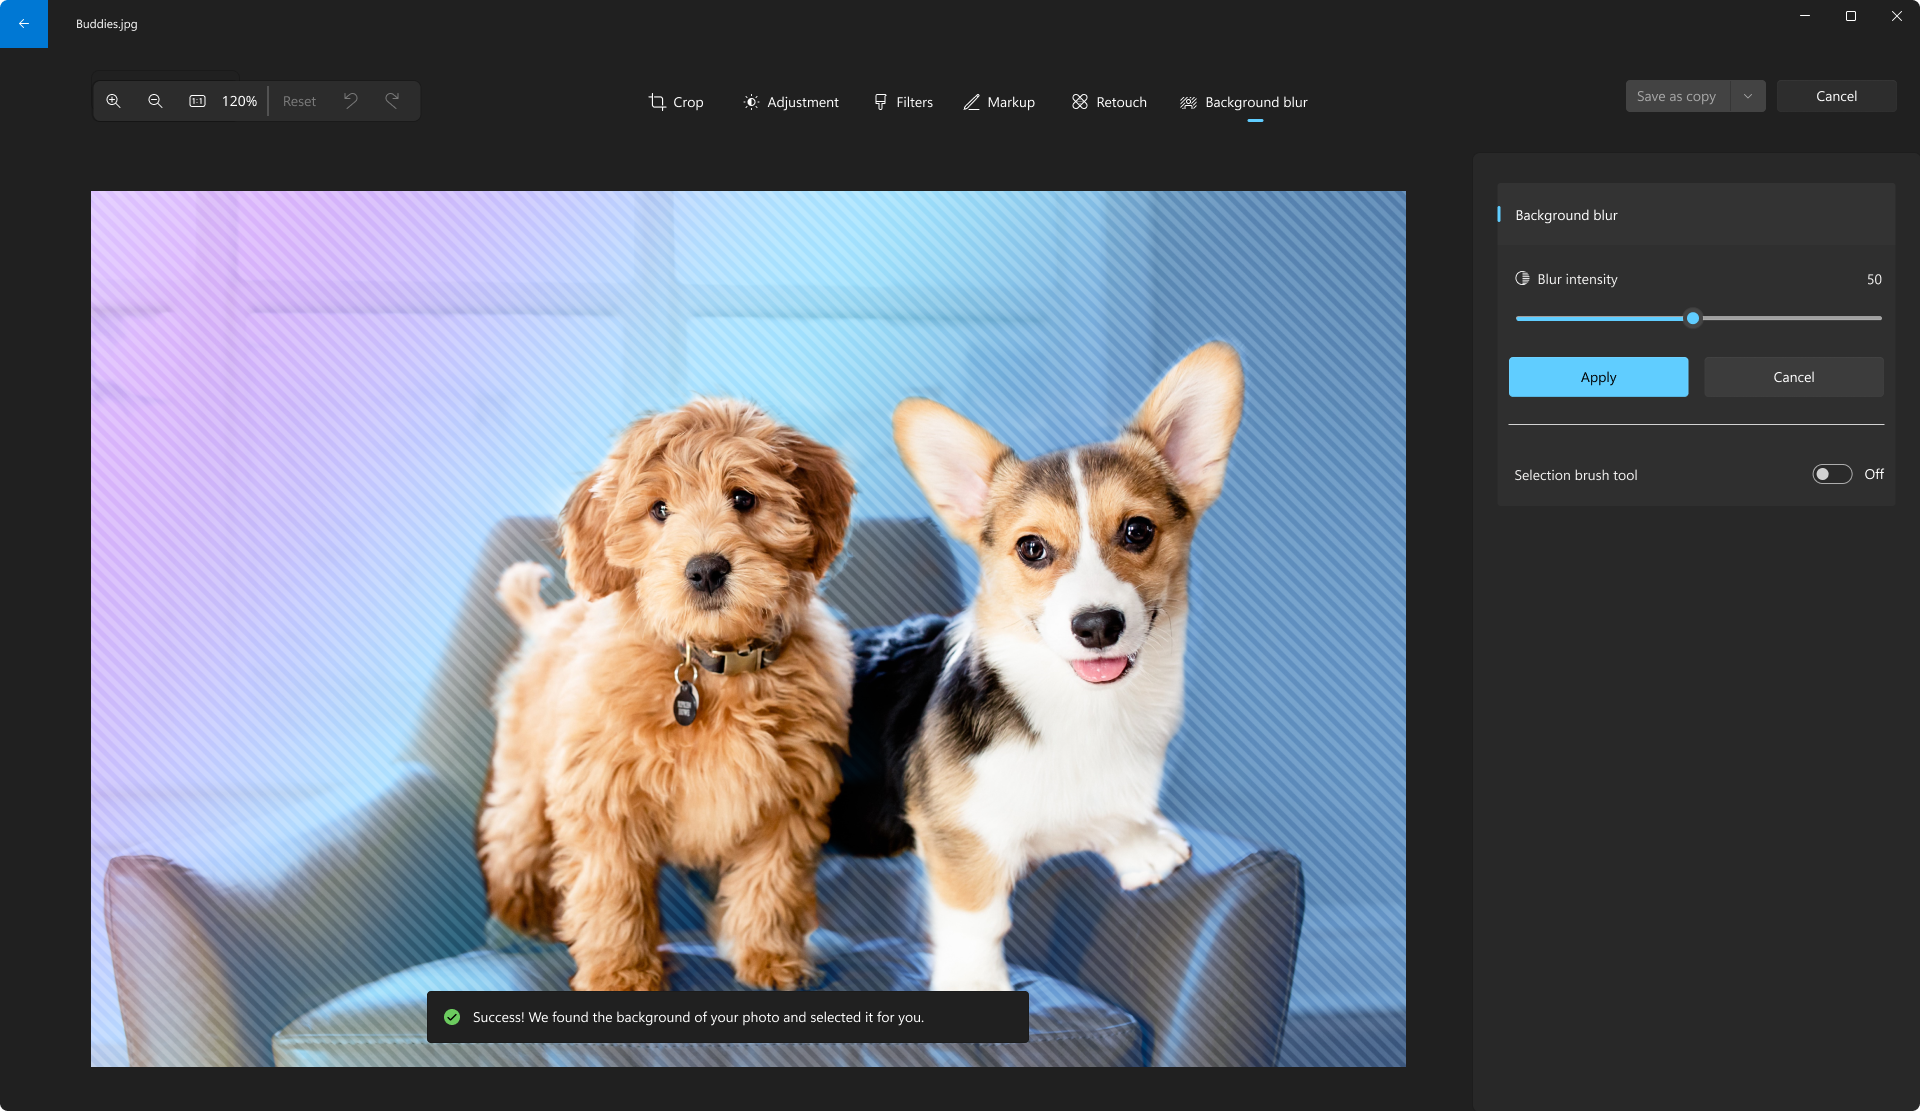 写真アプリの椅子に立っている2匹の犬の写真。 [背景ぼかし] オプションが選択され、犬の背後でぼかしが適用される領域がストライトされます。